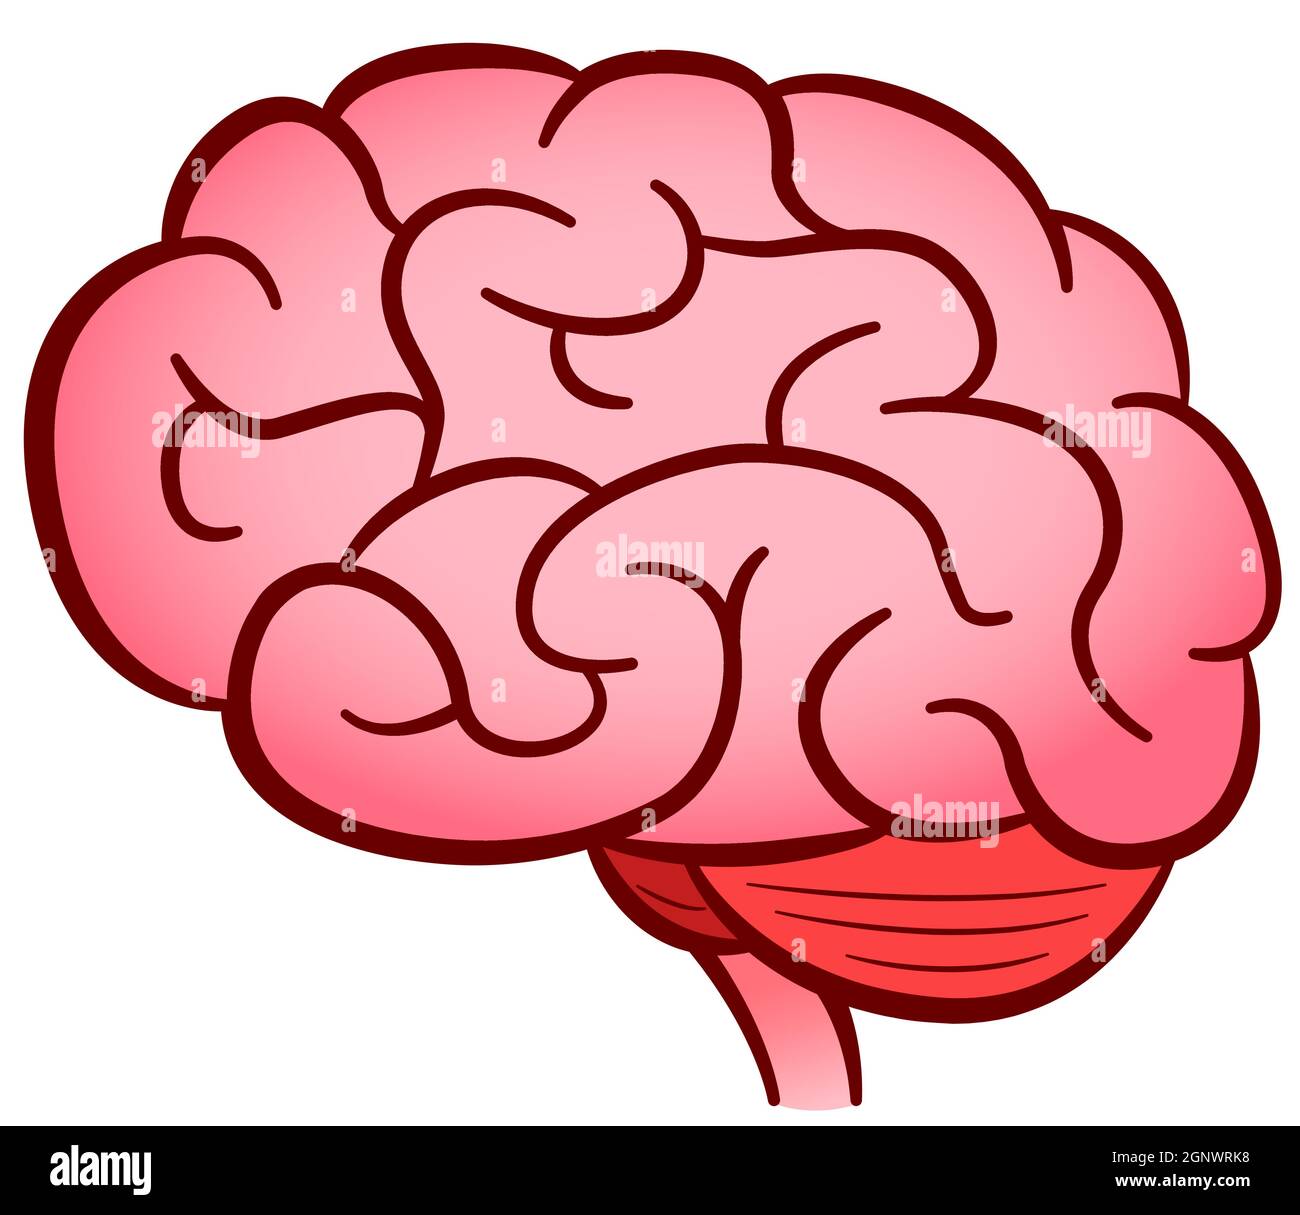 Disegno isolato di cervello umano vettoriale Illustrazione Vettoriale